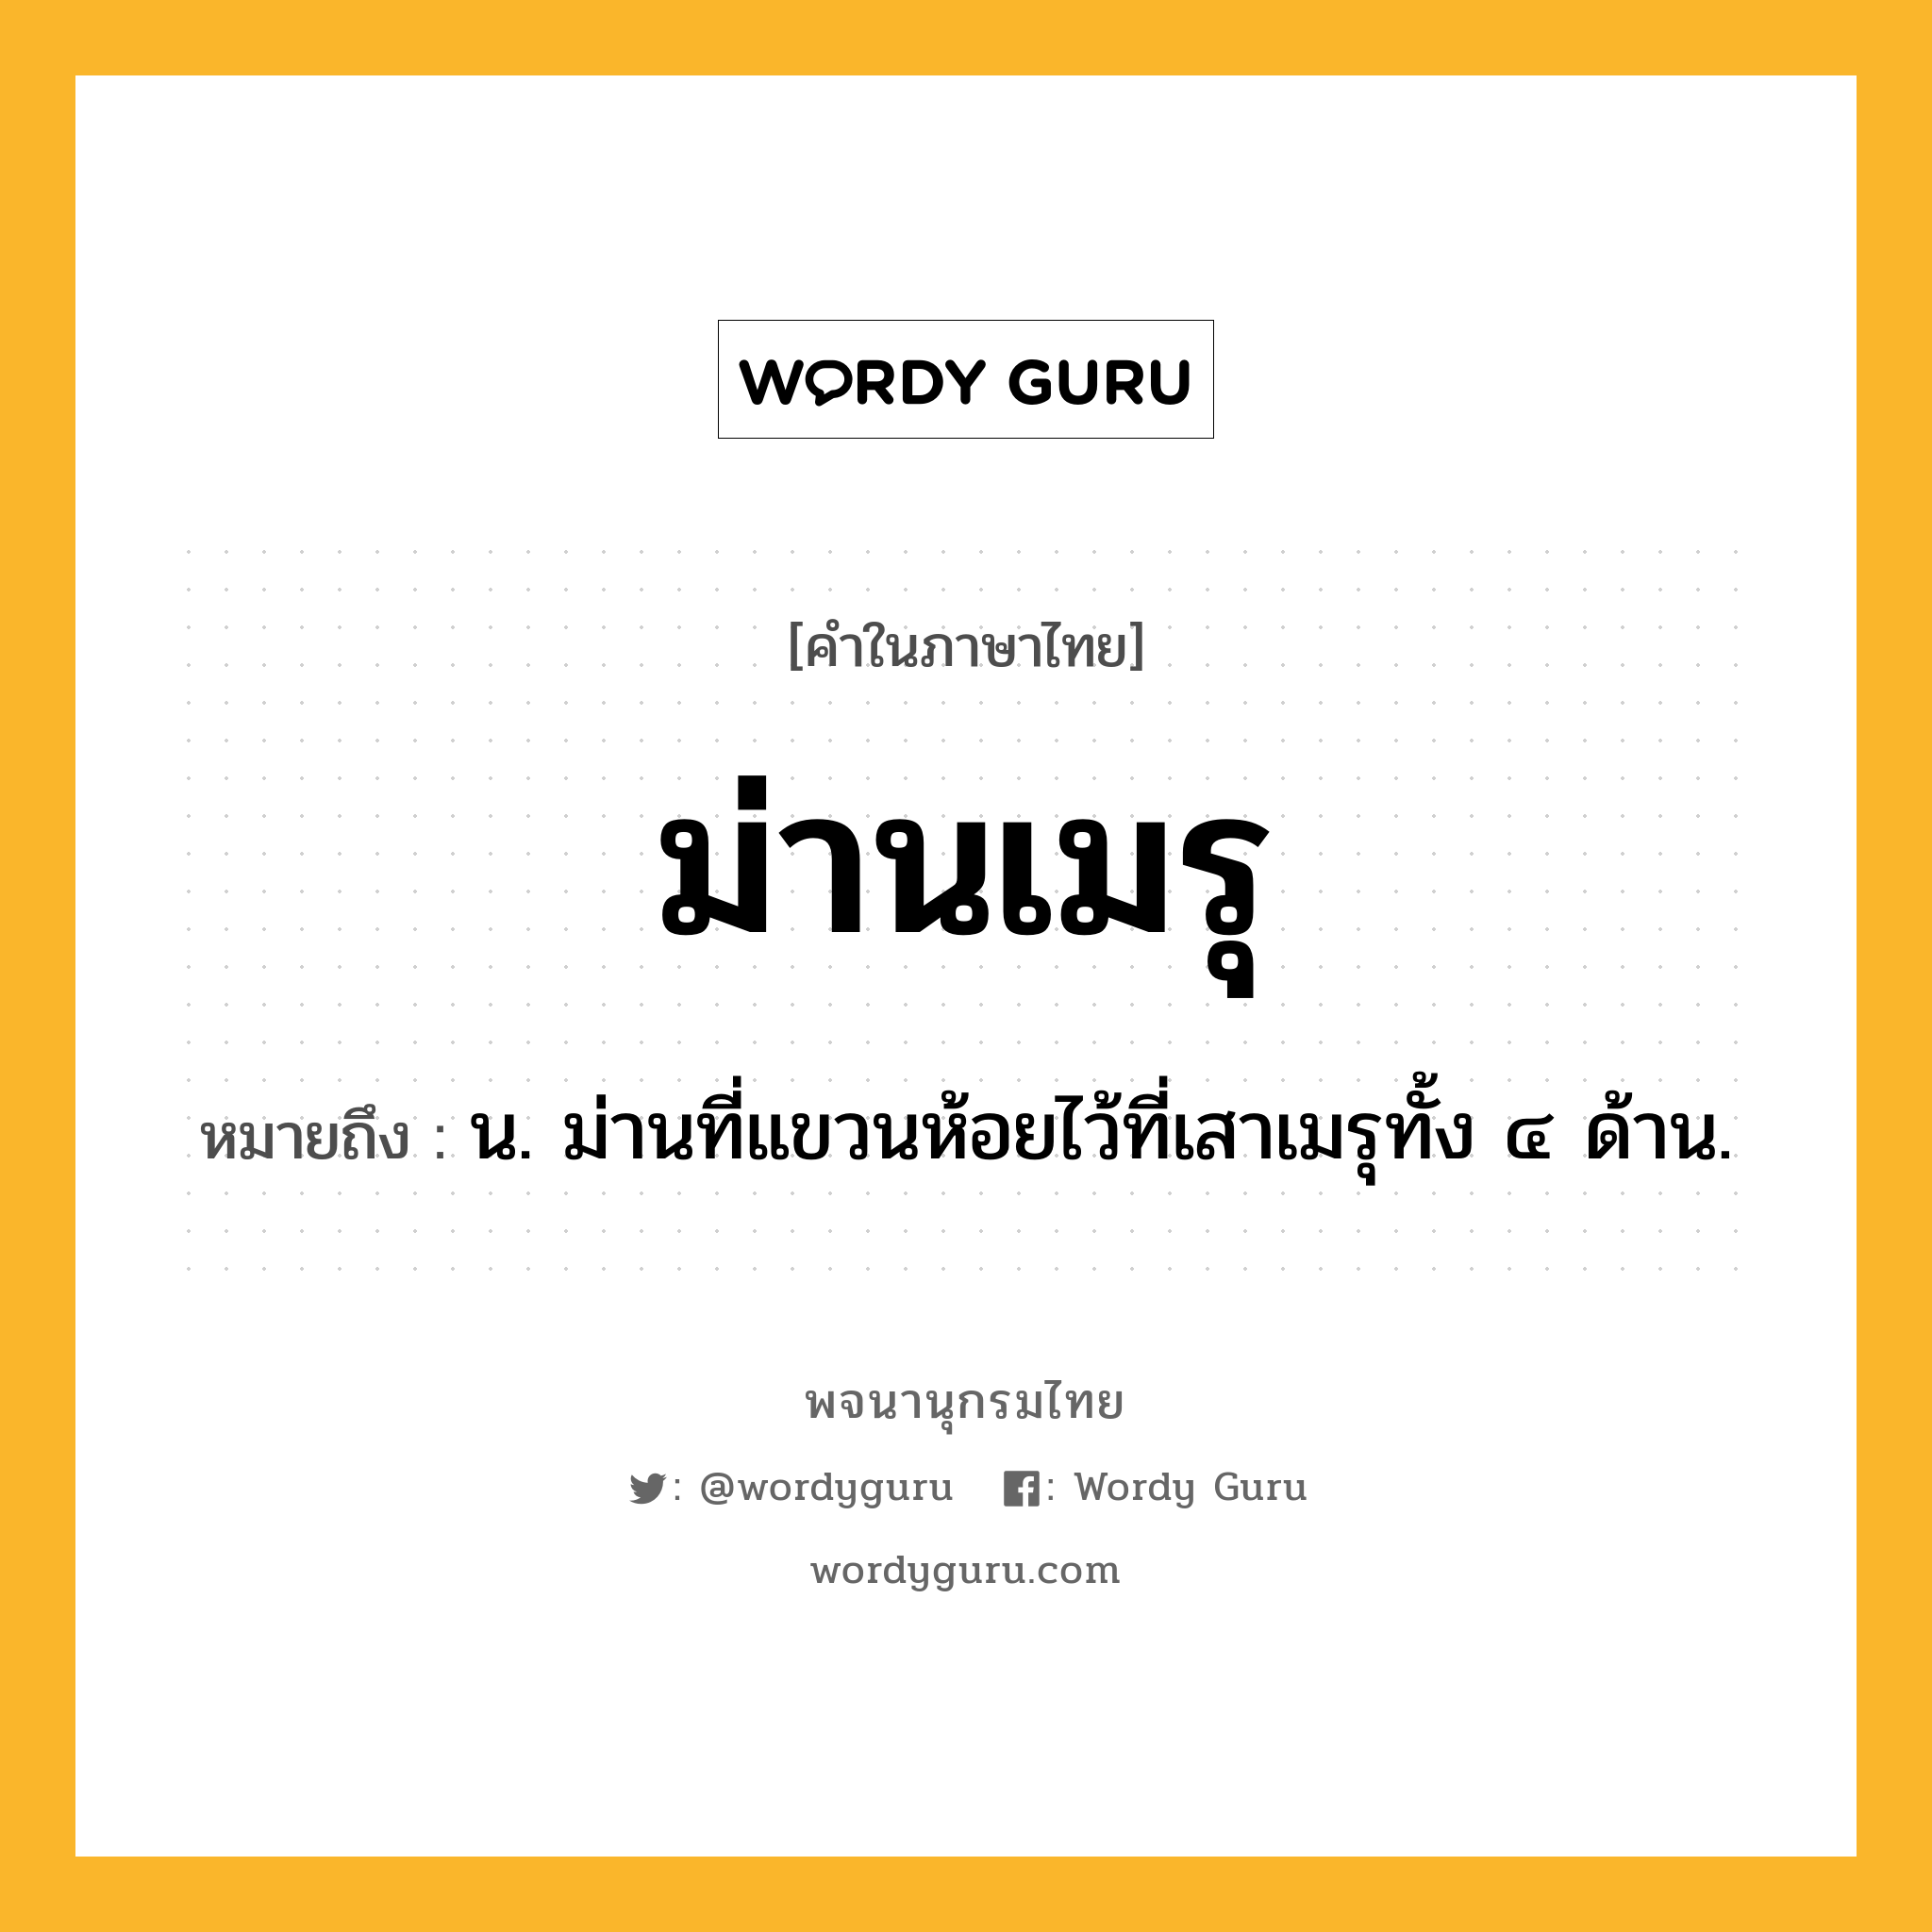 ม่านเมรุ ความหมาย หมายถึงอะไร?, คำในภาษาไทย ม่านเมรุ หมายถึง น. ม่านที่แขวนห้อยไว้ที่เสาเมรุทั้ง ๔ ด้าน.